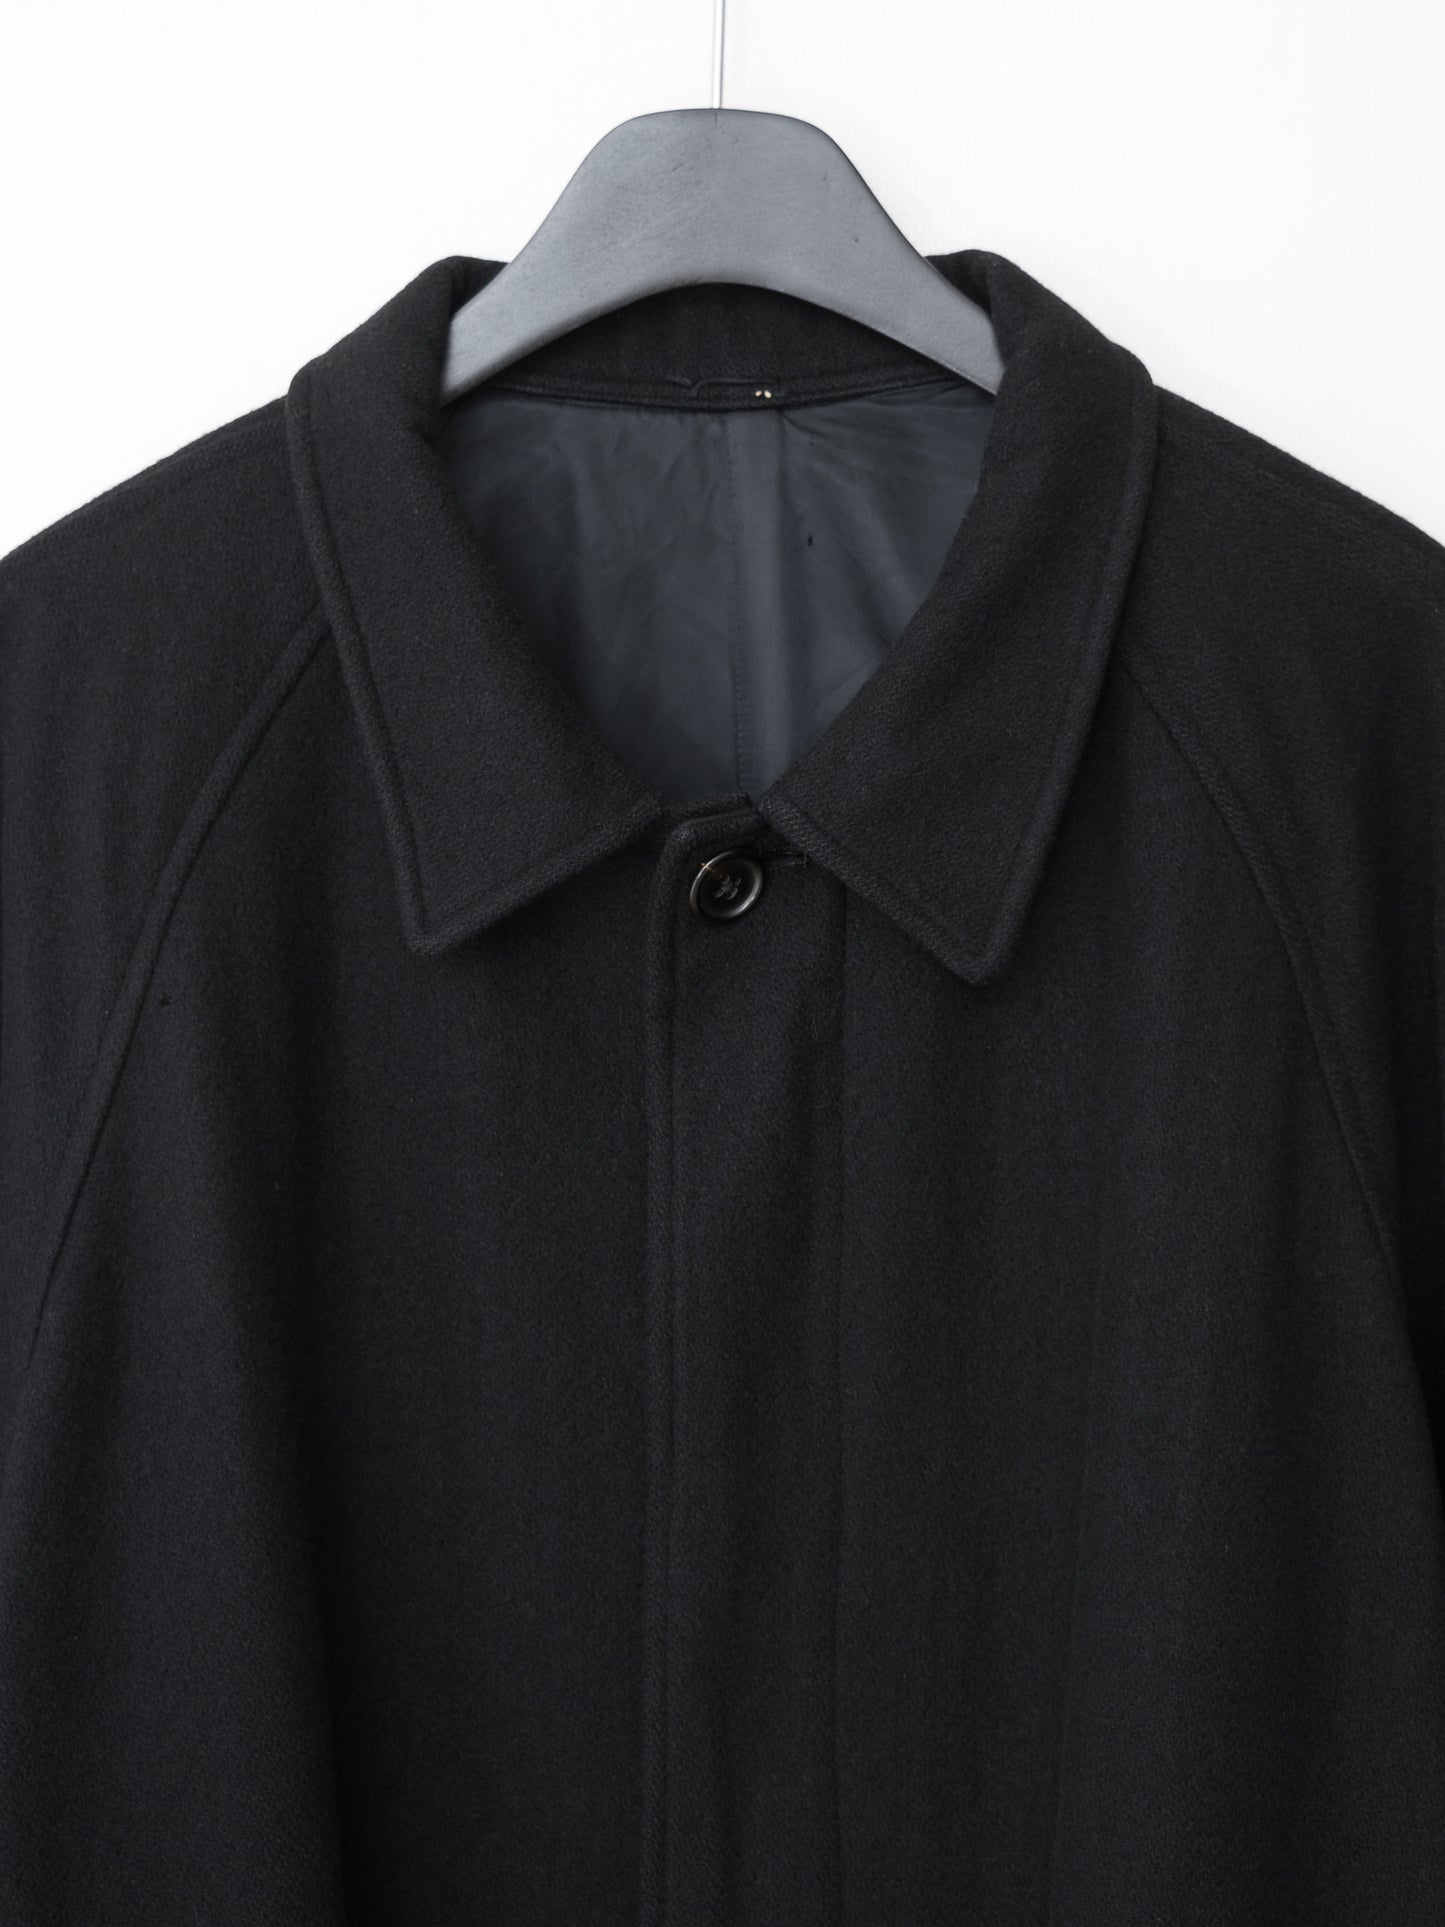 raglan mac coat black ∙ melton wool nylon ∙ medium